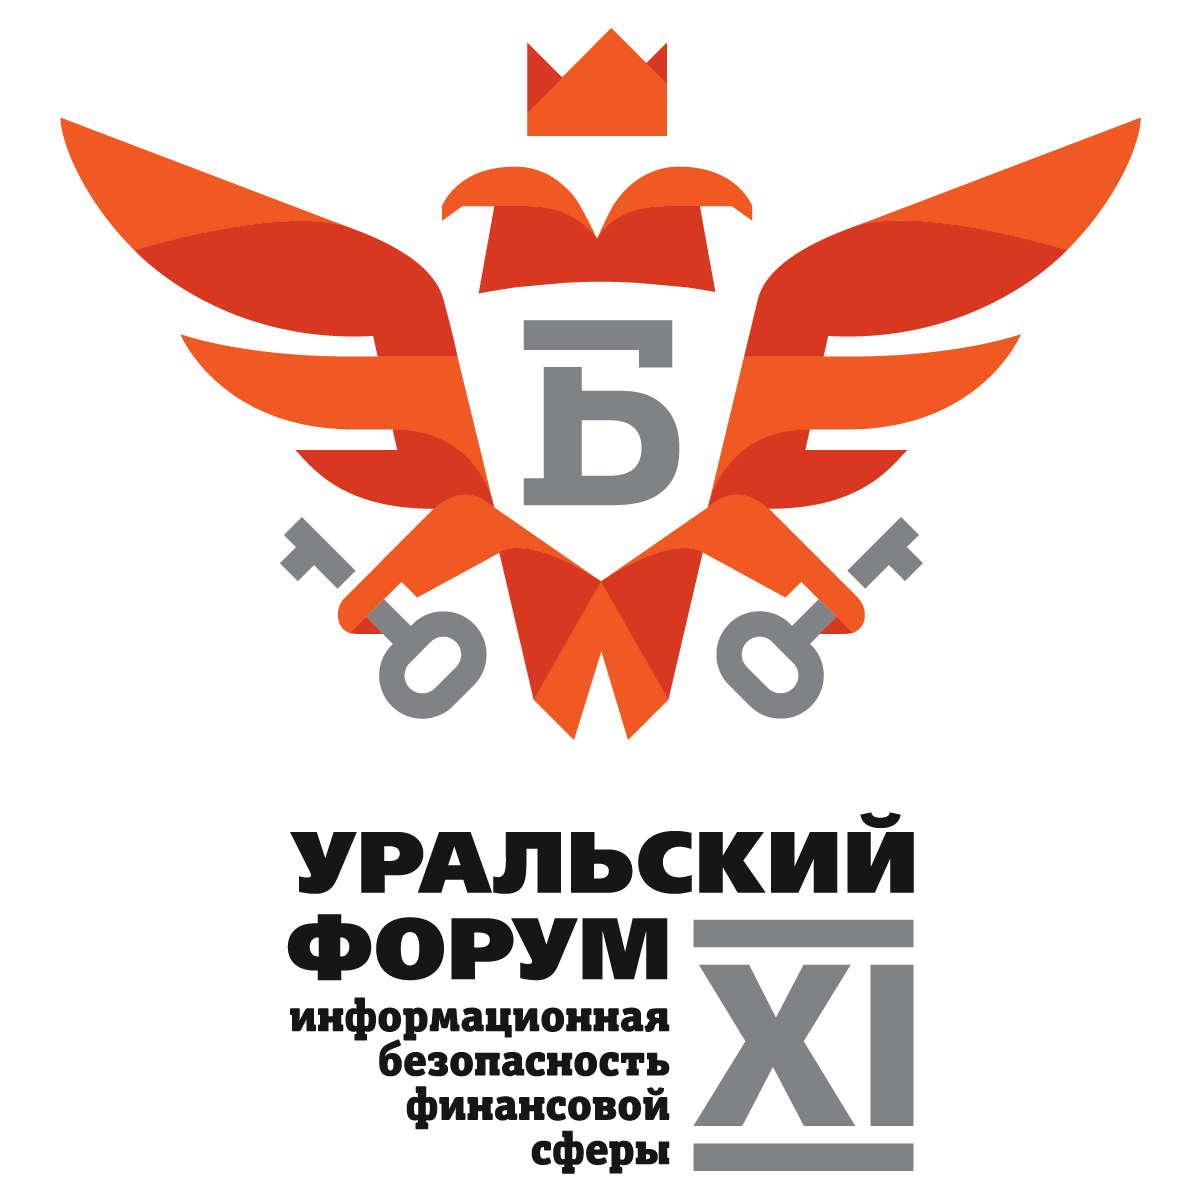 XI Уральский форум